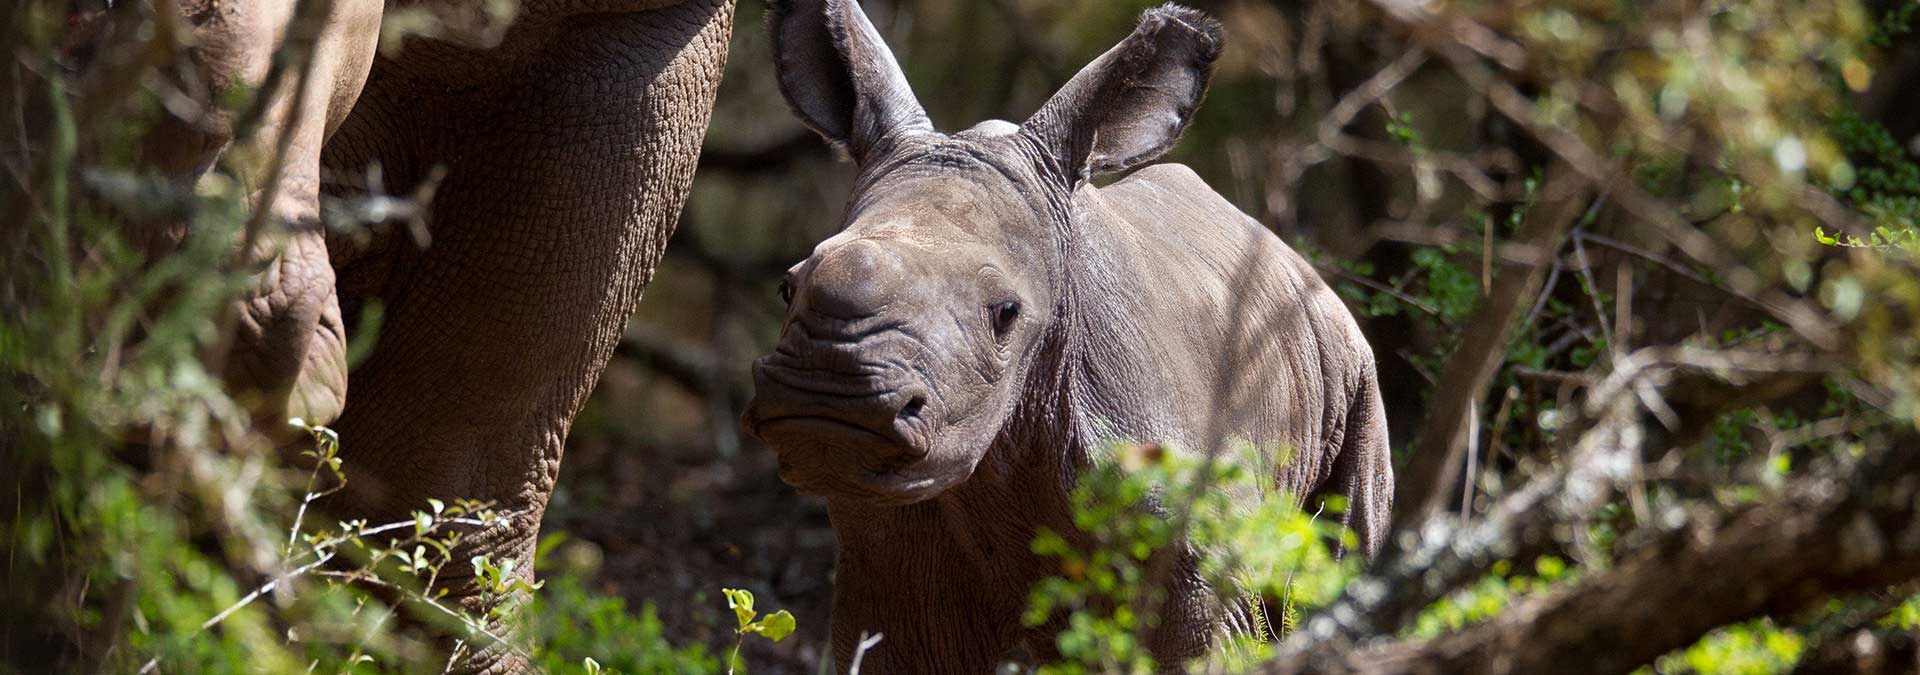 Rhino calf at Kariega